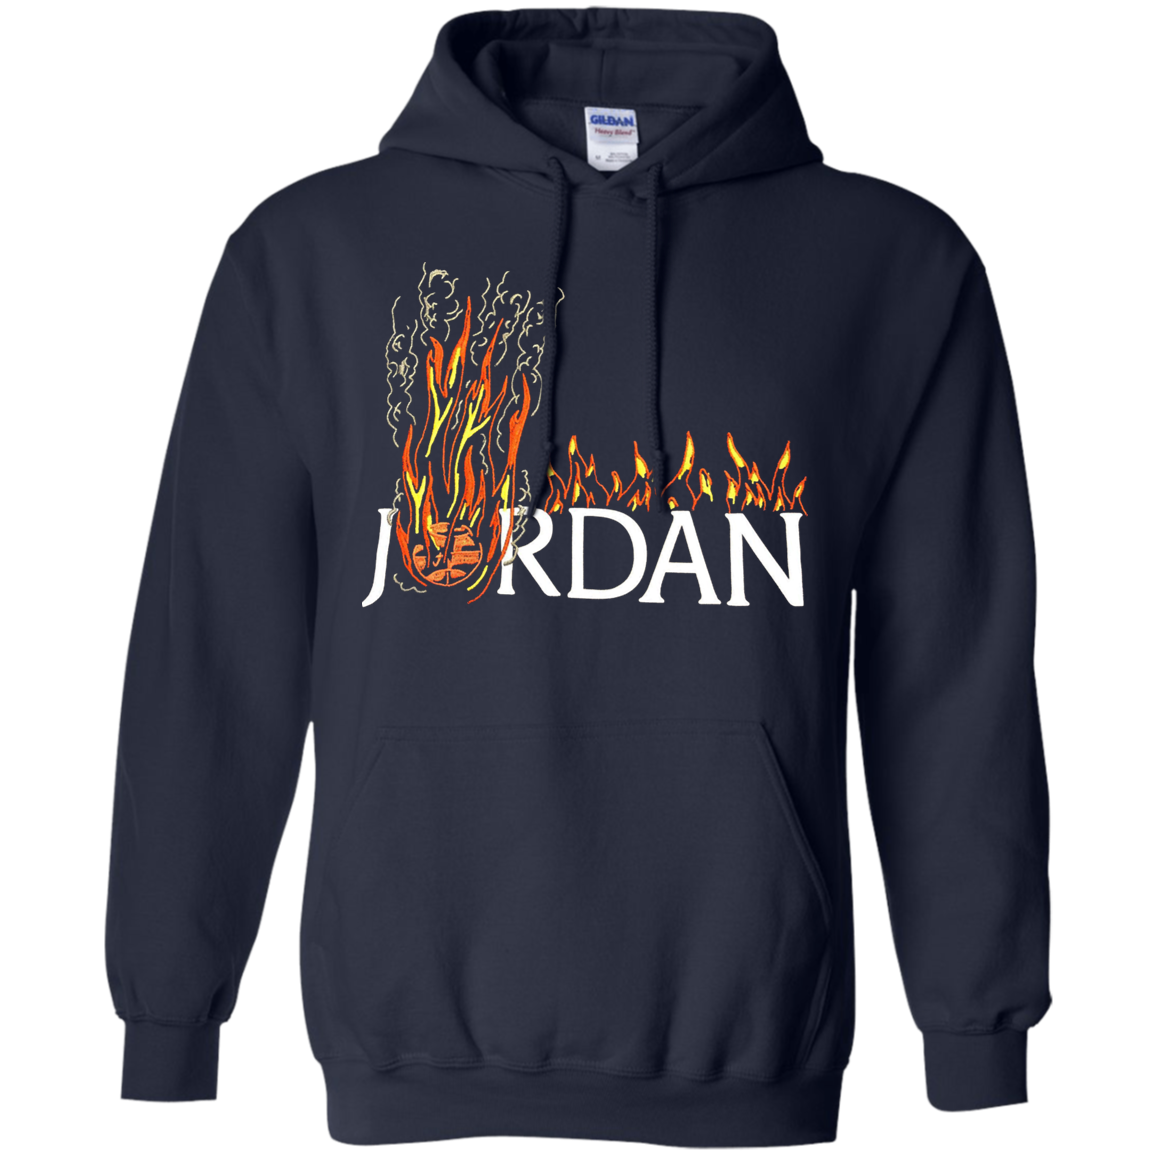 travis scott jordan hoodie sizing